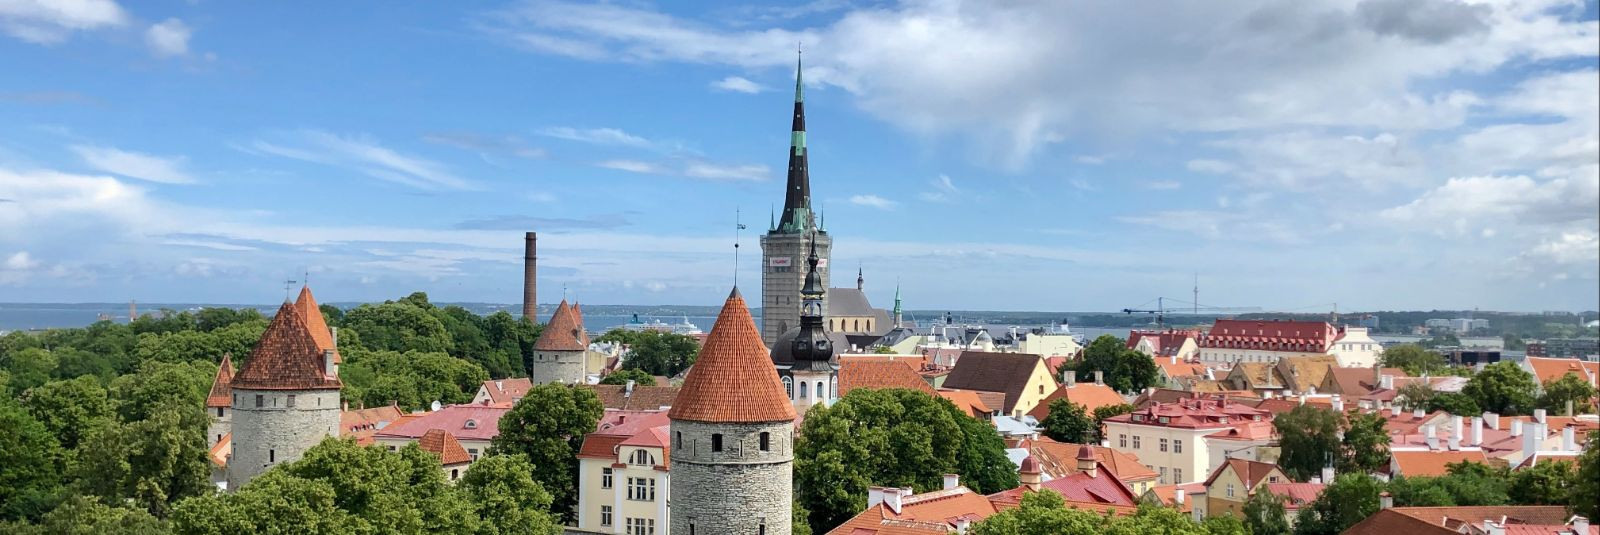 Eesti on maa, millel on rikas ja mitmekülgne kultuuripärand, mis on aastasadu kujundanud nii kohalike elanike kui ka külaliste mõtteviisi. Selle kultuuri juured